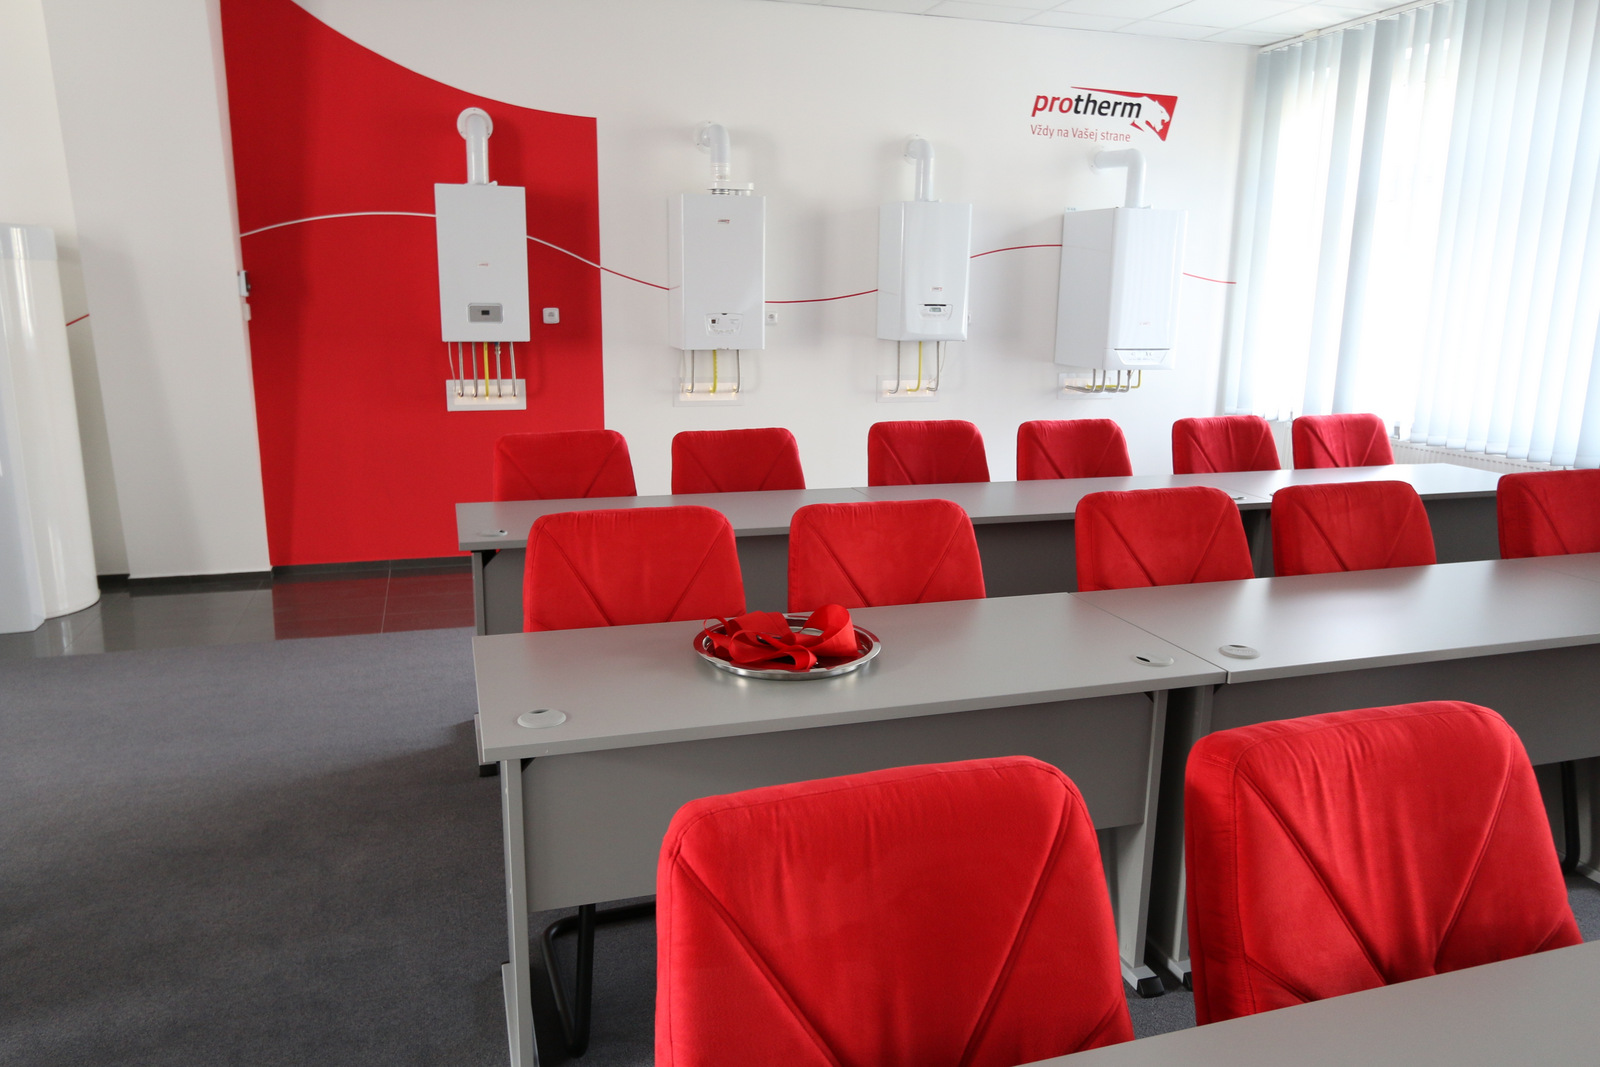 Nové školiace centrum je zariadené v červeno-bielom dizajne značky Protherm.